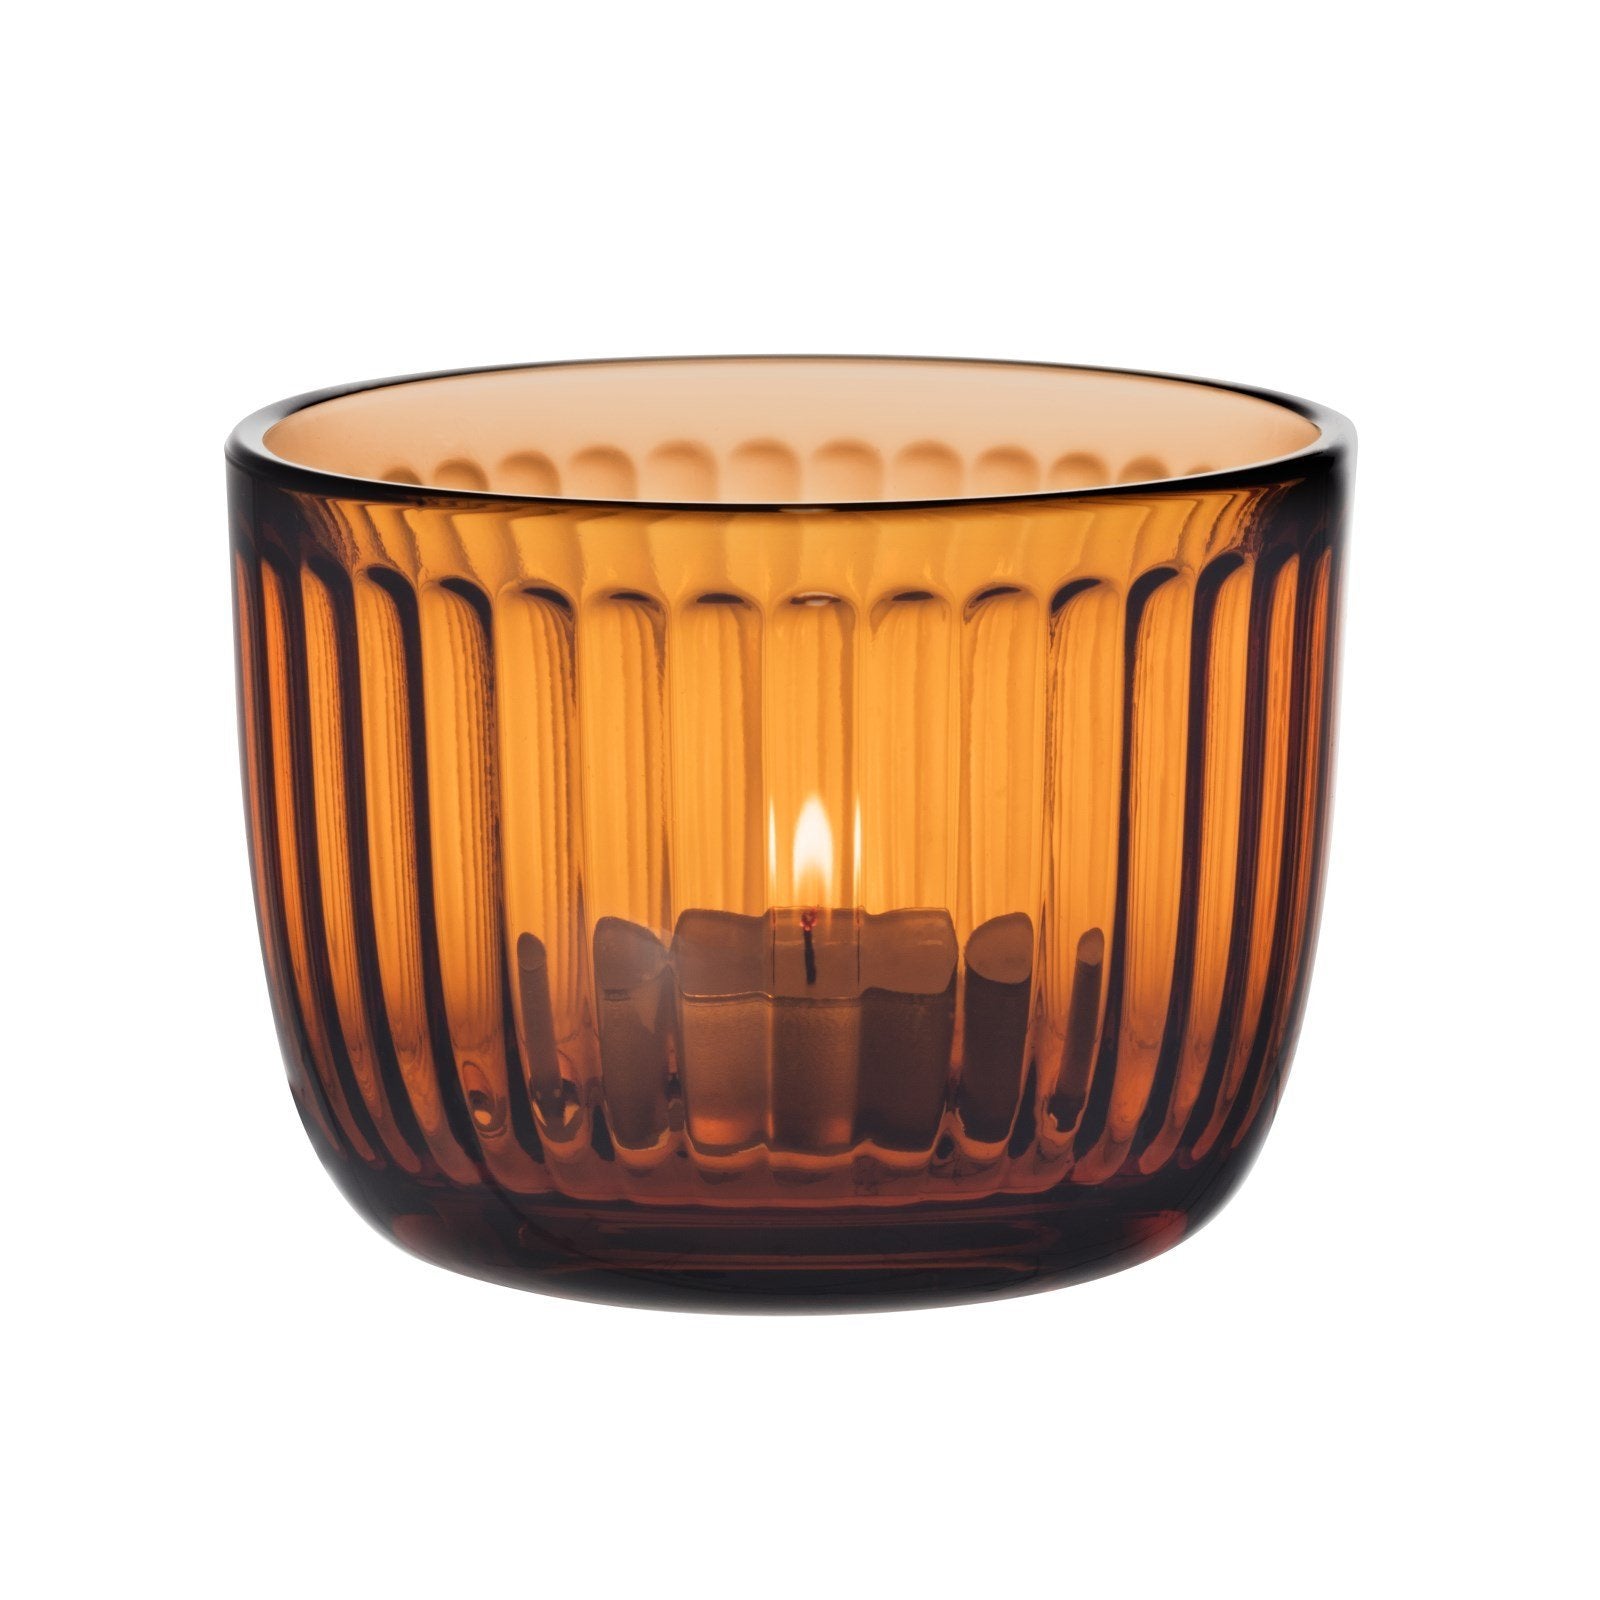 Iittala Raami Lantern Glass Sevilla Orange, 90mm